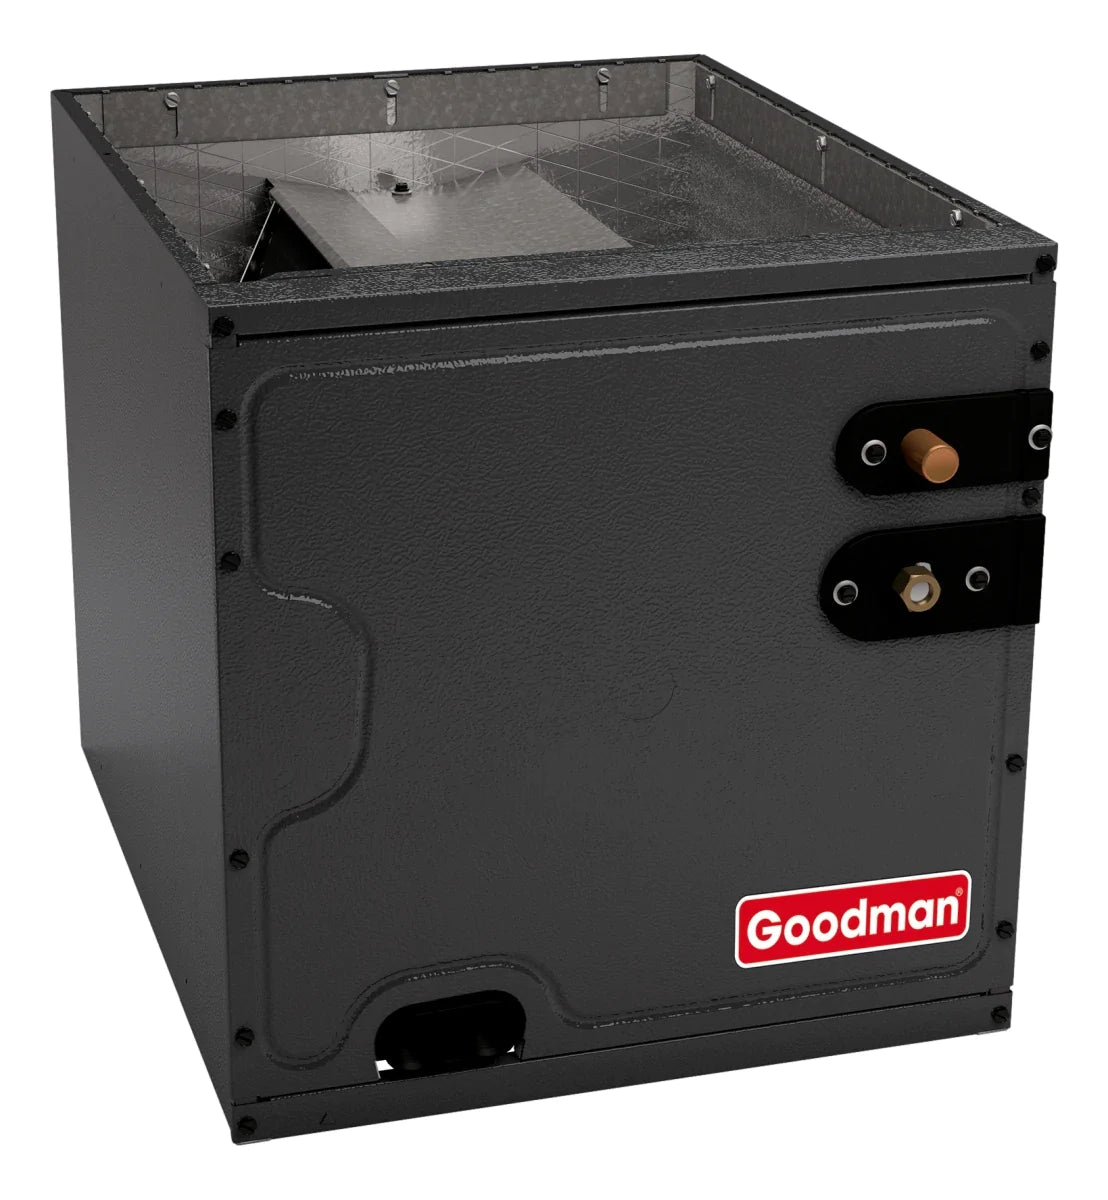 Goodman 3 TON 15 SEER2 Upflow AC system with 80% AFUE 60k BTU 2 stage Low NOx Furnace (GSXM403610, CAPTA3626B4, GMVC800603BX)